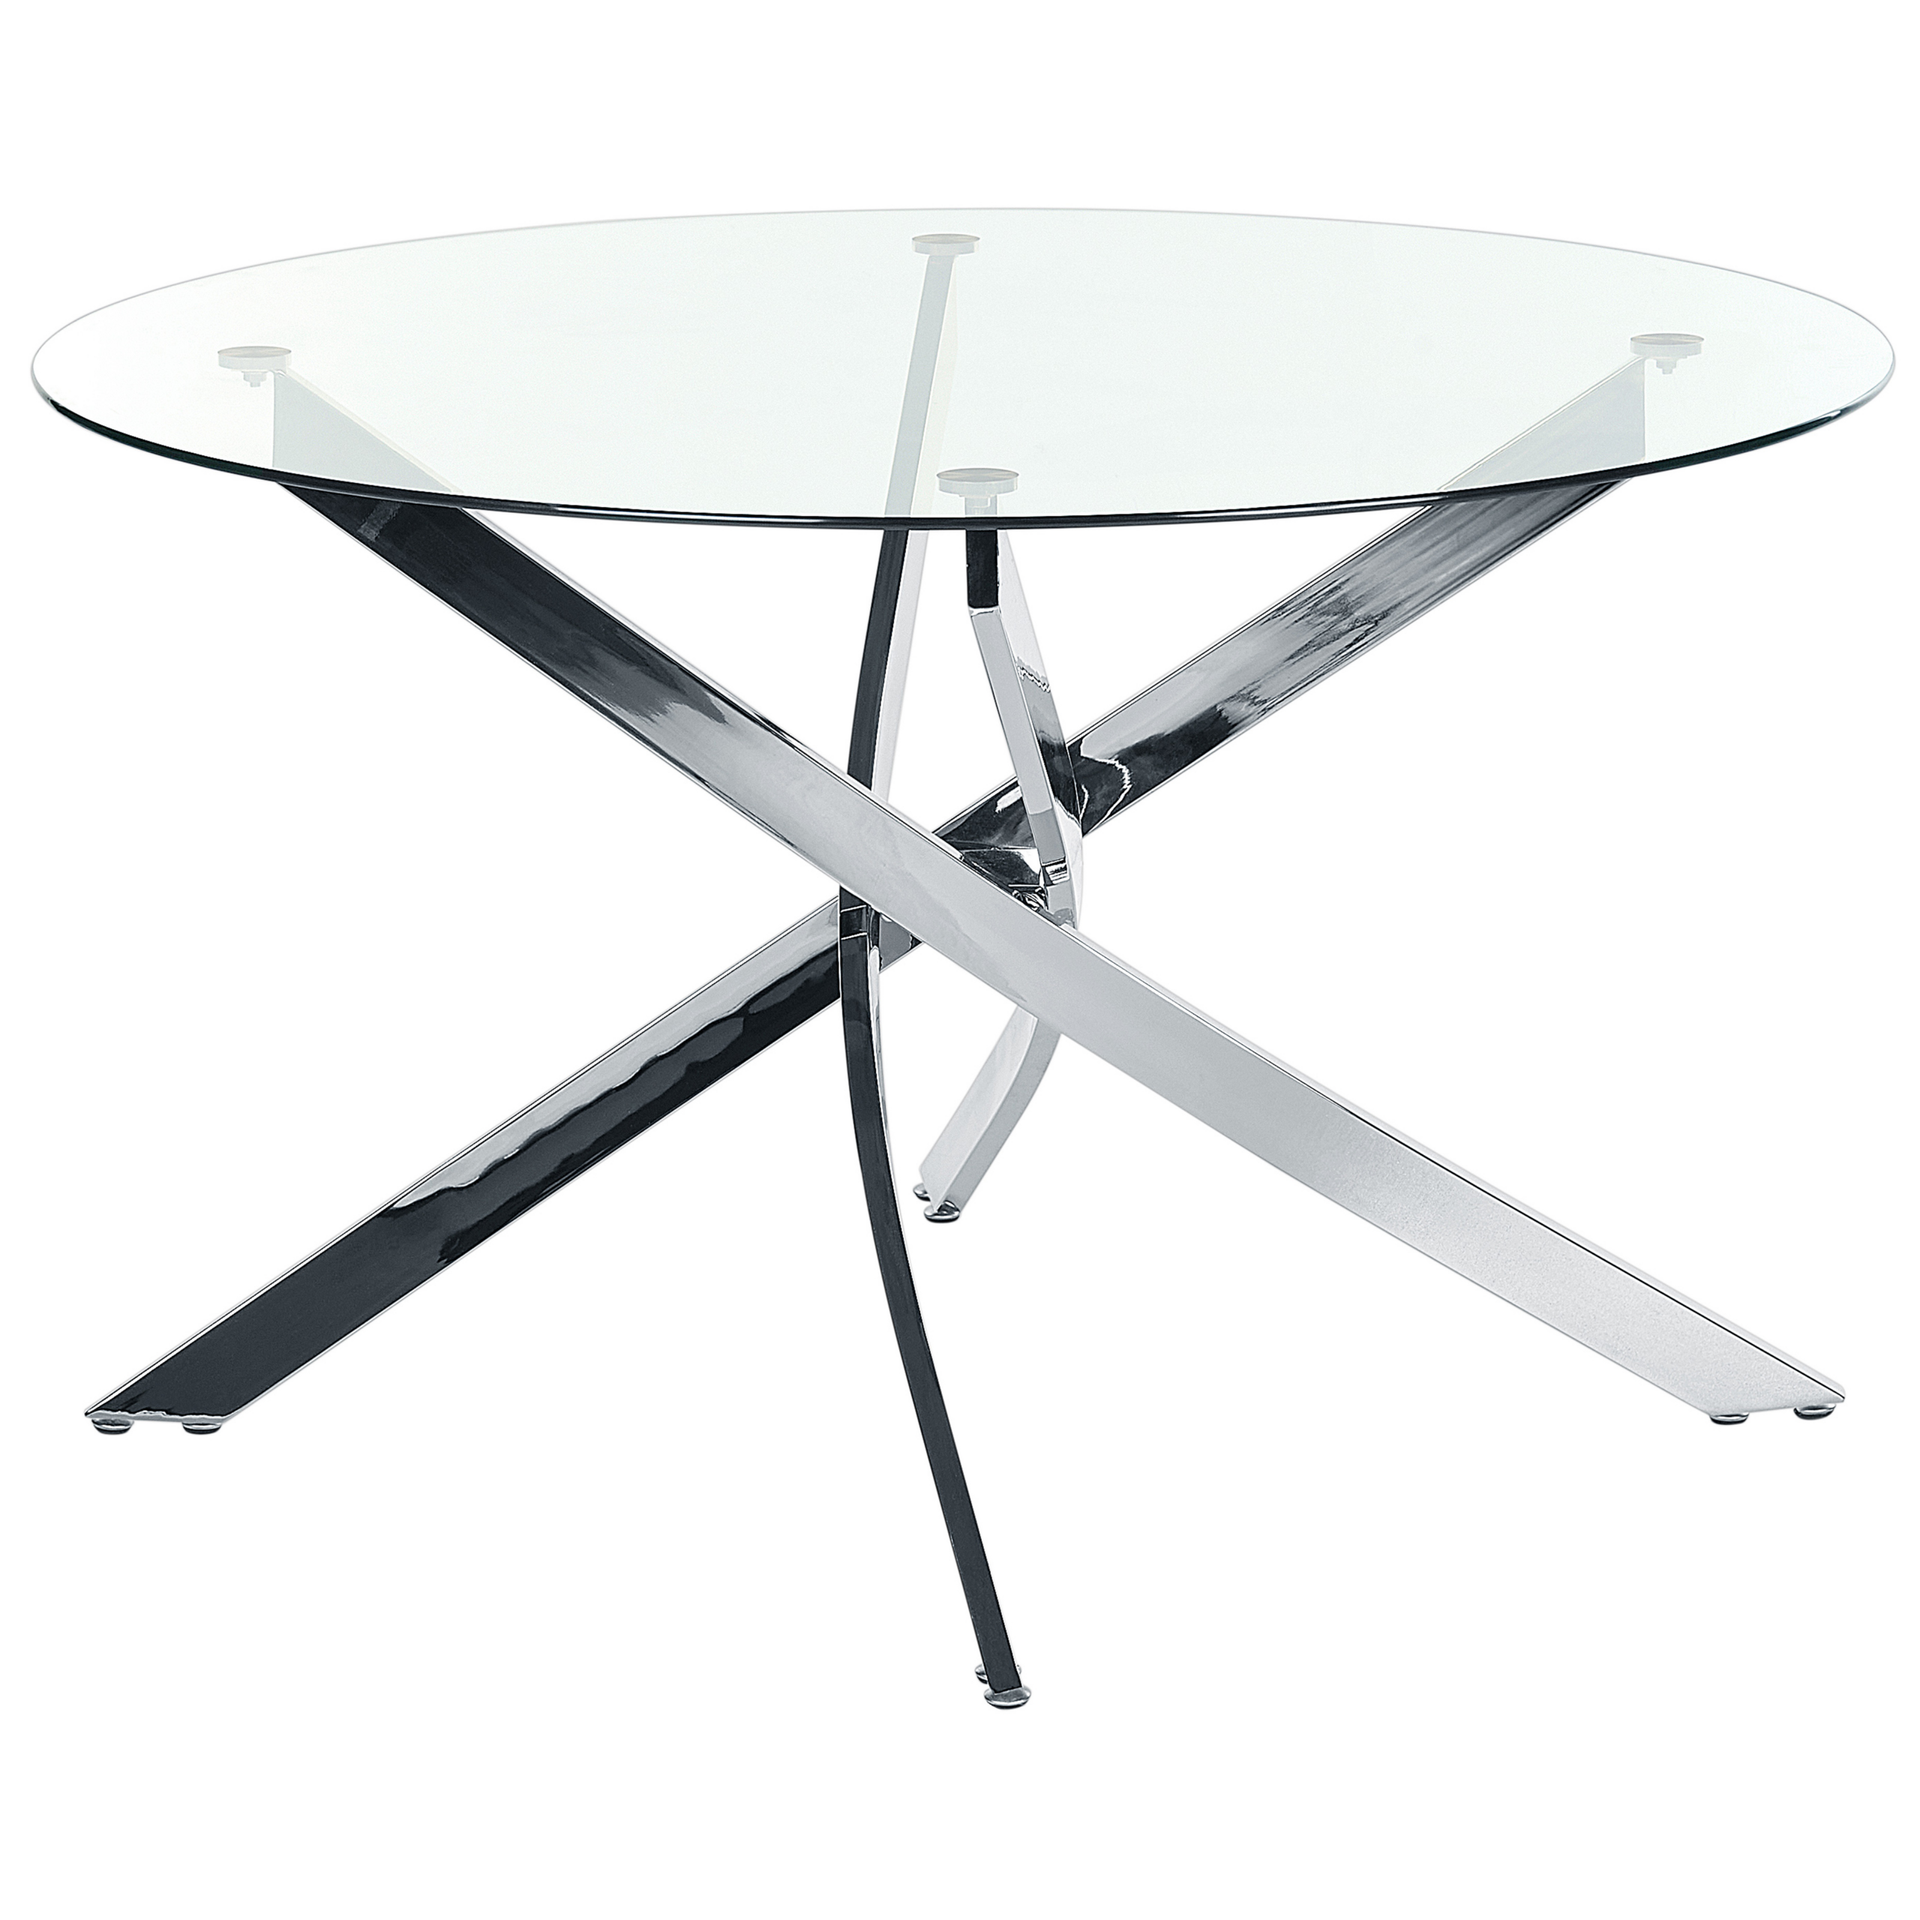 Zdjęcia - Stół kuchenny Stół do jadalni okrągły szklany ⌀ 120 cm srebrny MARAMO